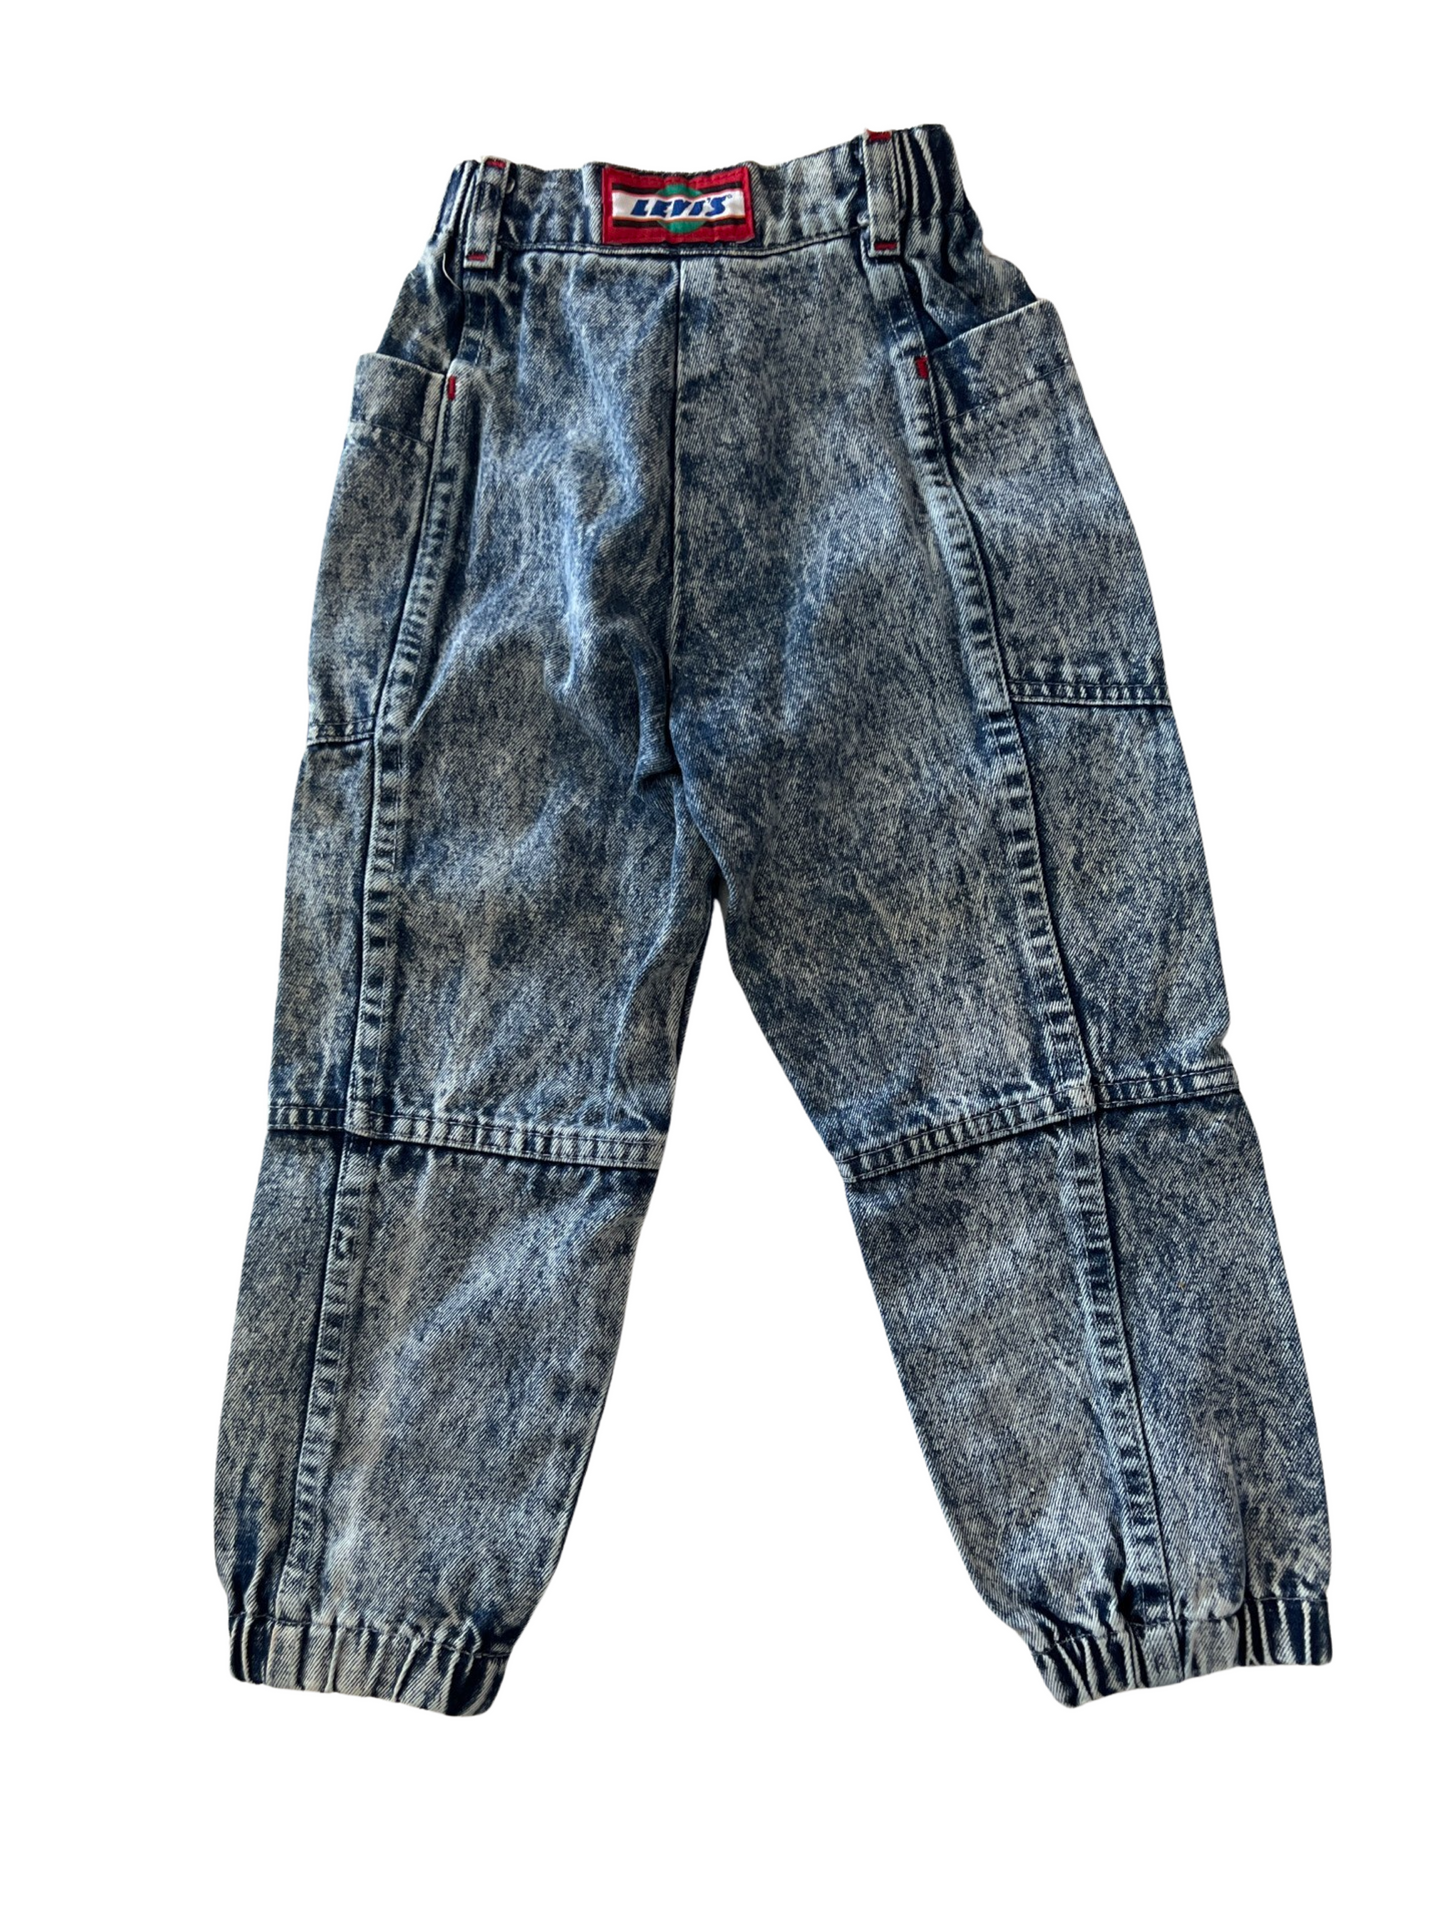 Vintage Levi's X Formula 1 Jeans - SIZE 5Y